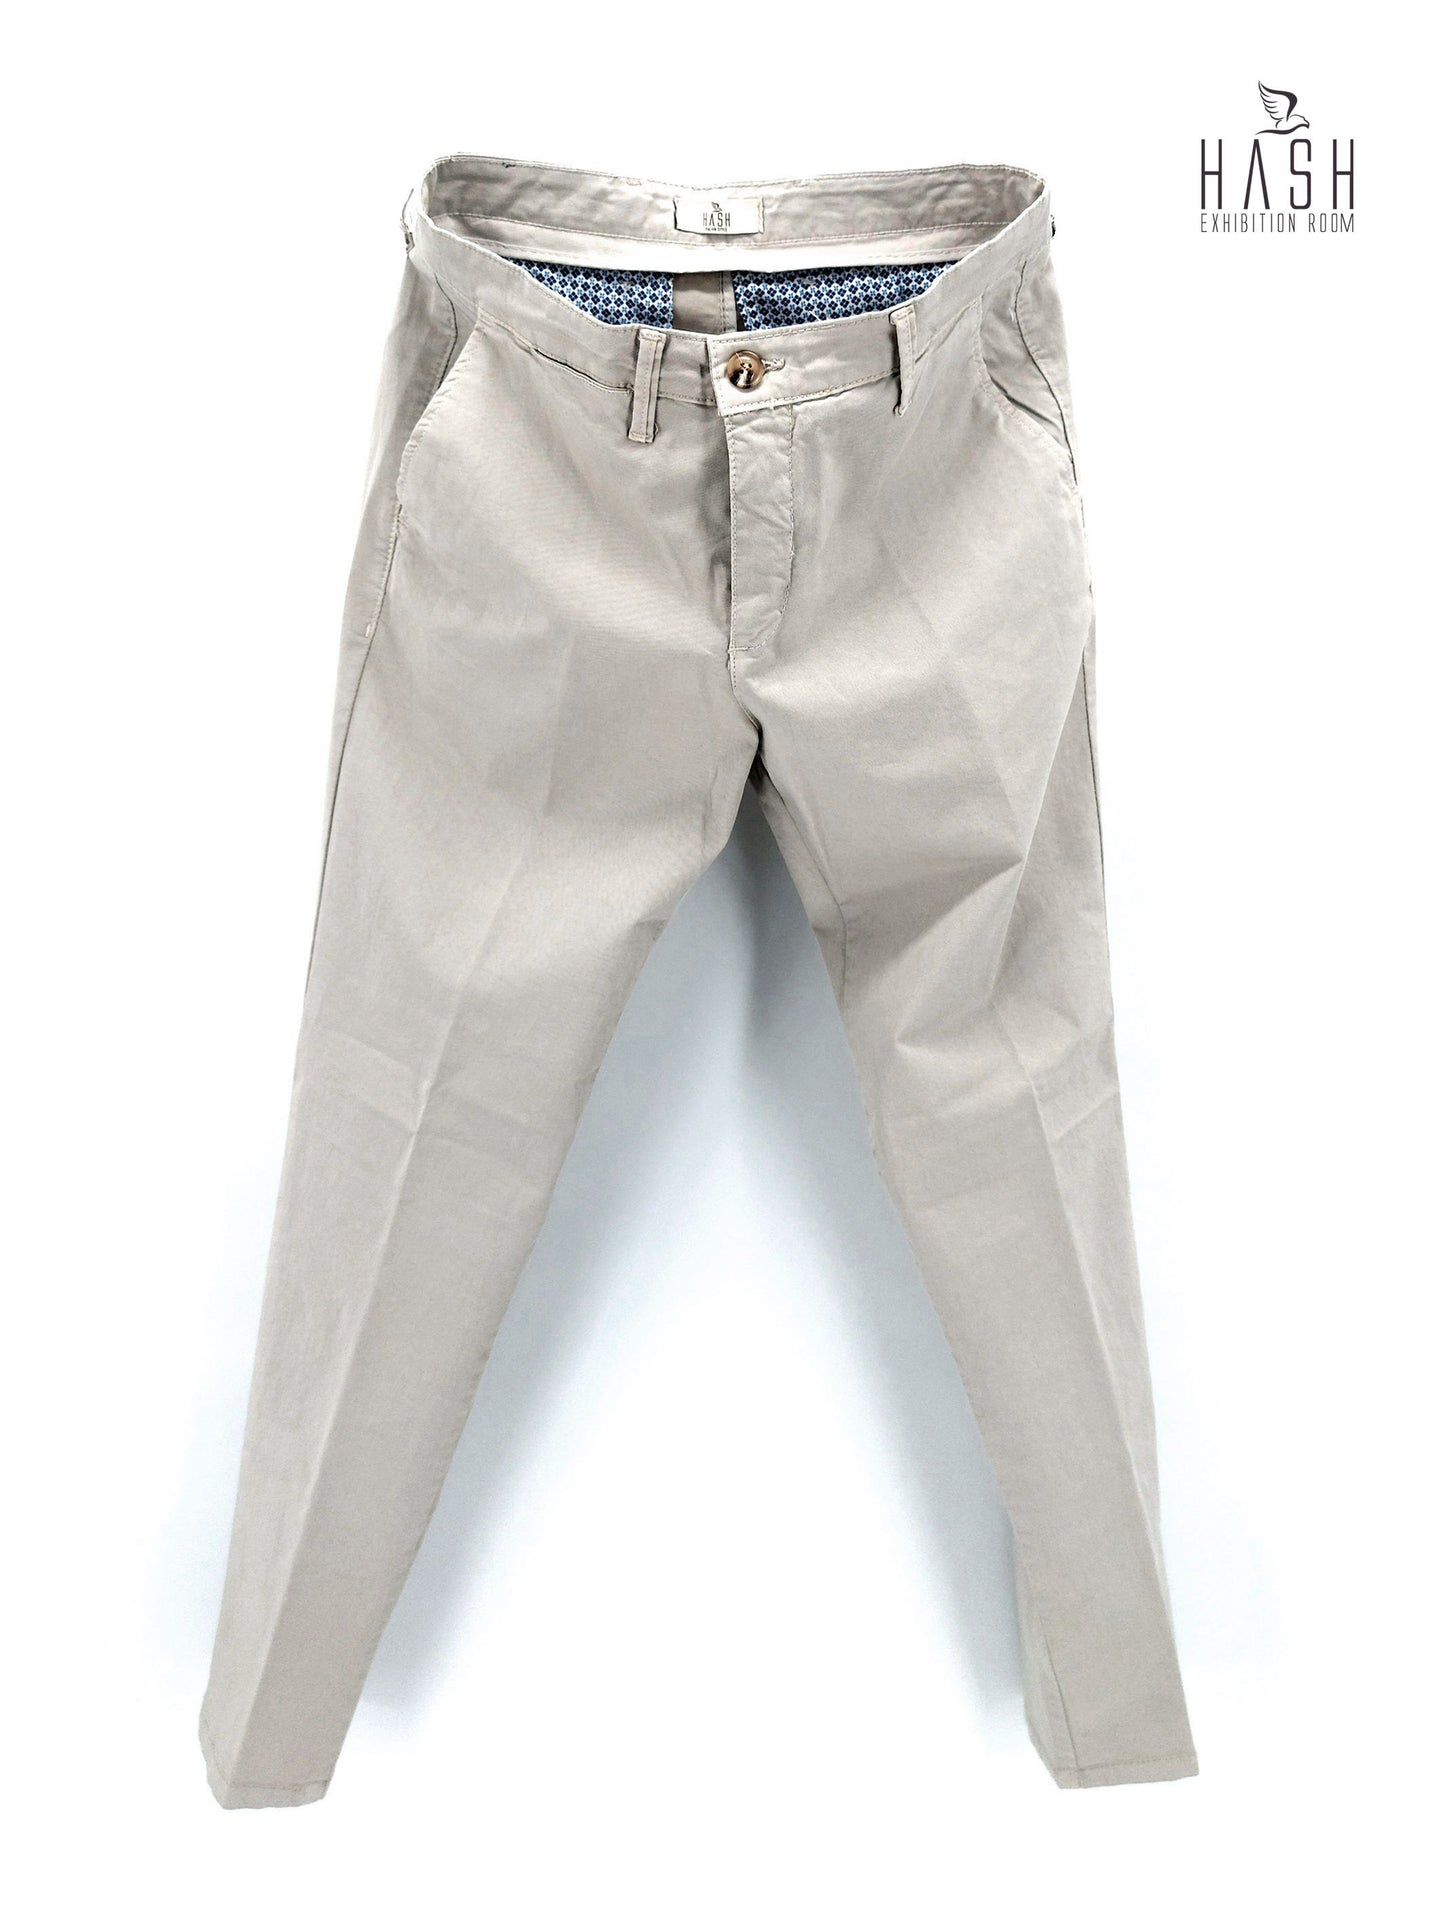 Pantalone Corda Chiaro Modello Chinos in Cotone Raso